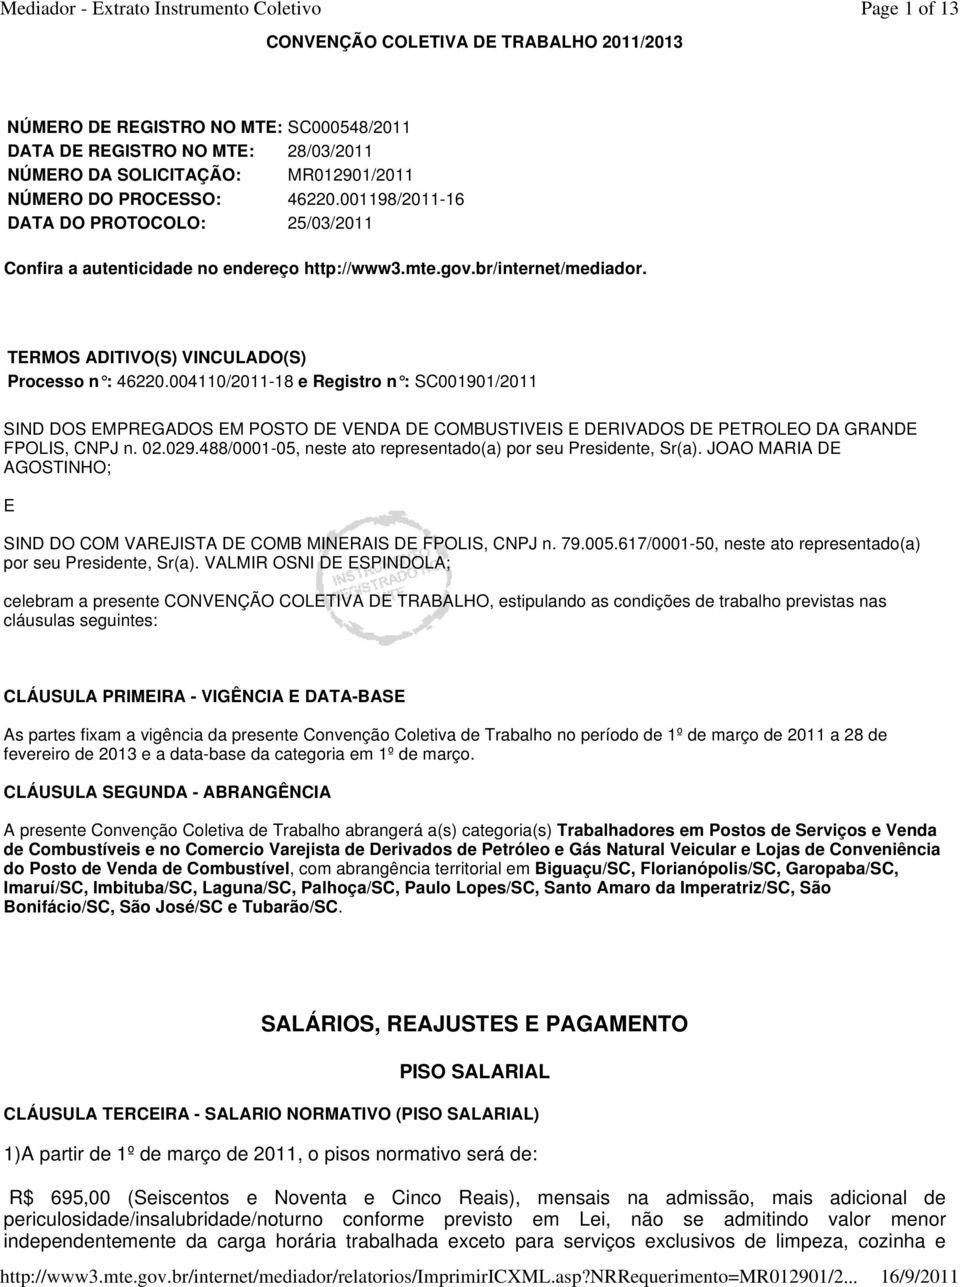 004110/2011-18 e Registro n : SC001901/2011 SIND DOS EMPREGADOS EM POSTO DE VENDA DE COMBUSTIVEIS E DERIVADOS DE PETROLEO DA GRANDE FPOLIS, CNPJ n. 02.029.